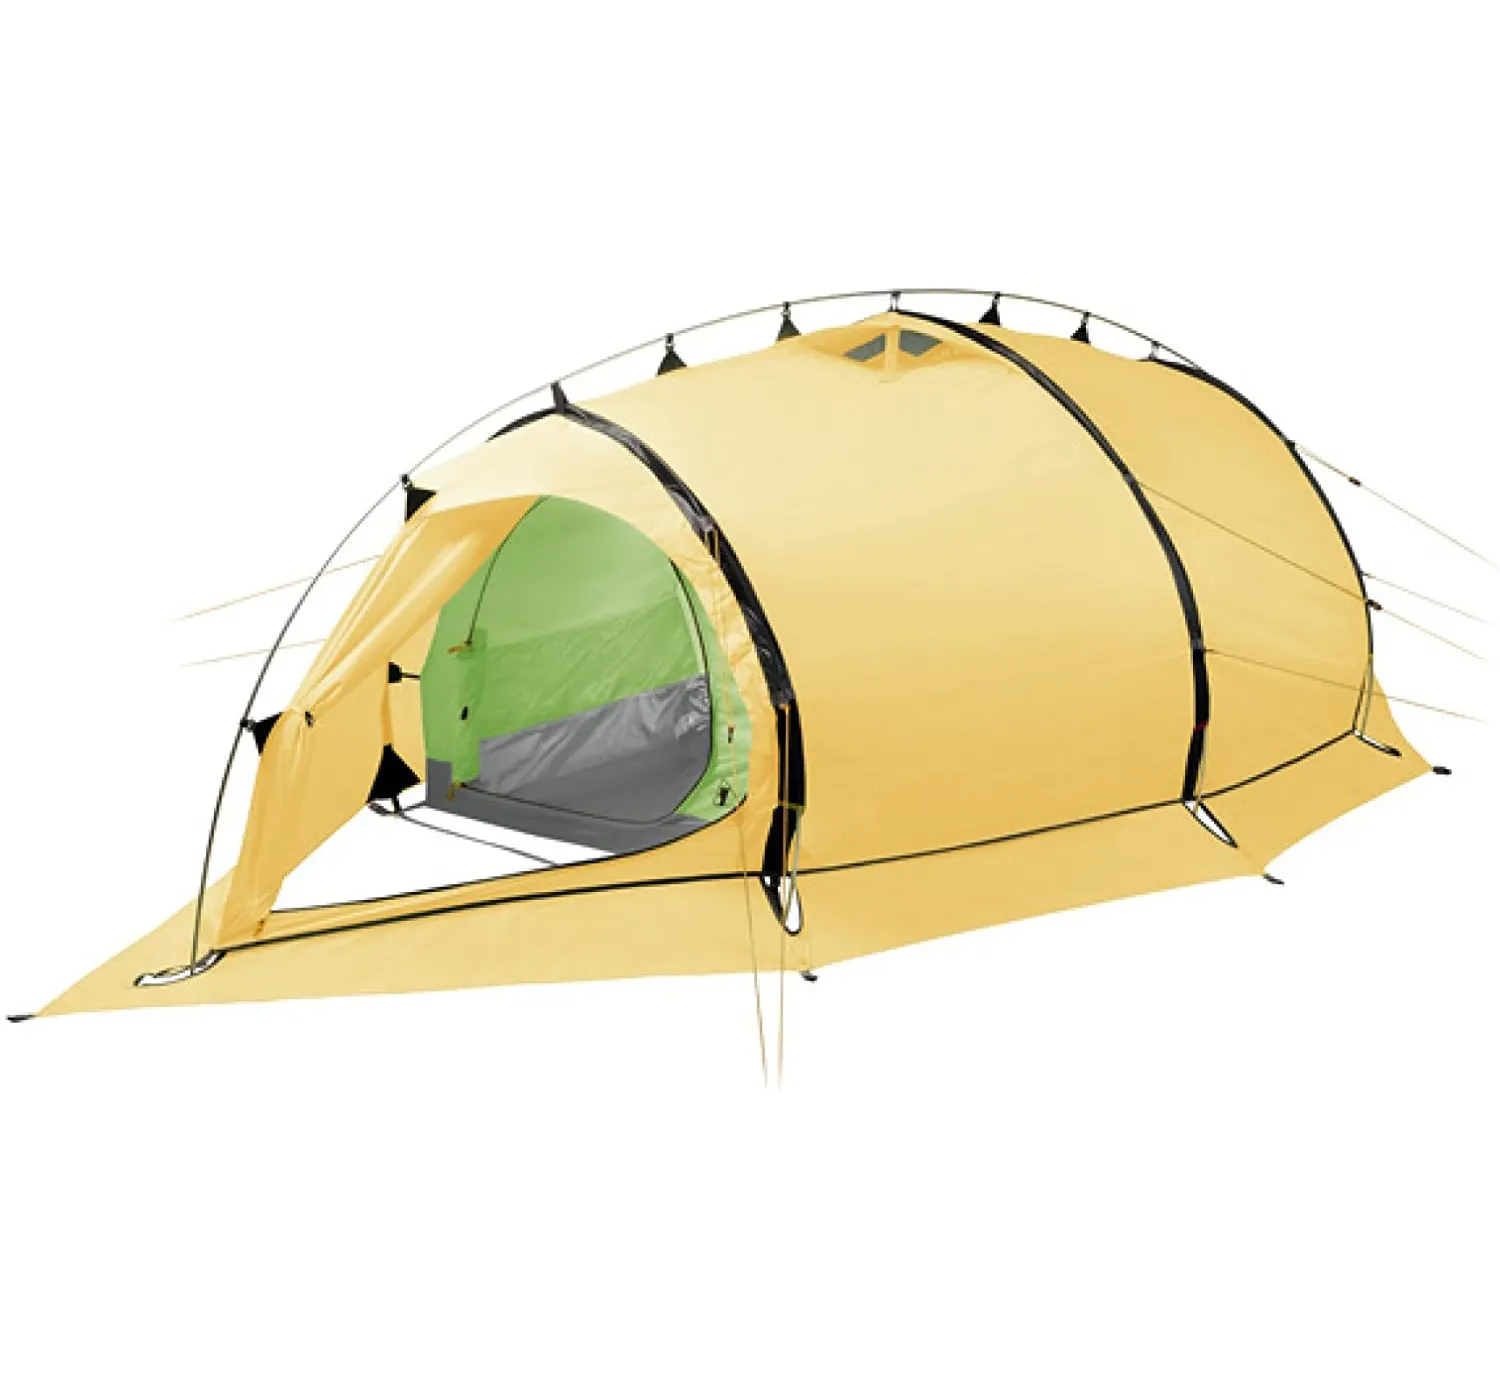 نفق نوع خيمة ل 2 شخص Windwall 2 تسلق الجبال و السياحة الجبلية التخييم خيمة في الهواء الطلق